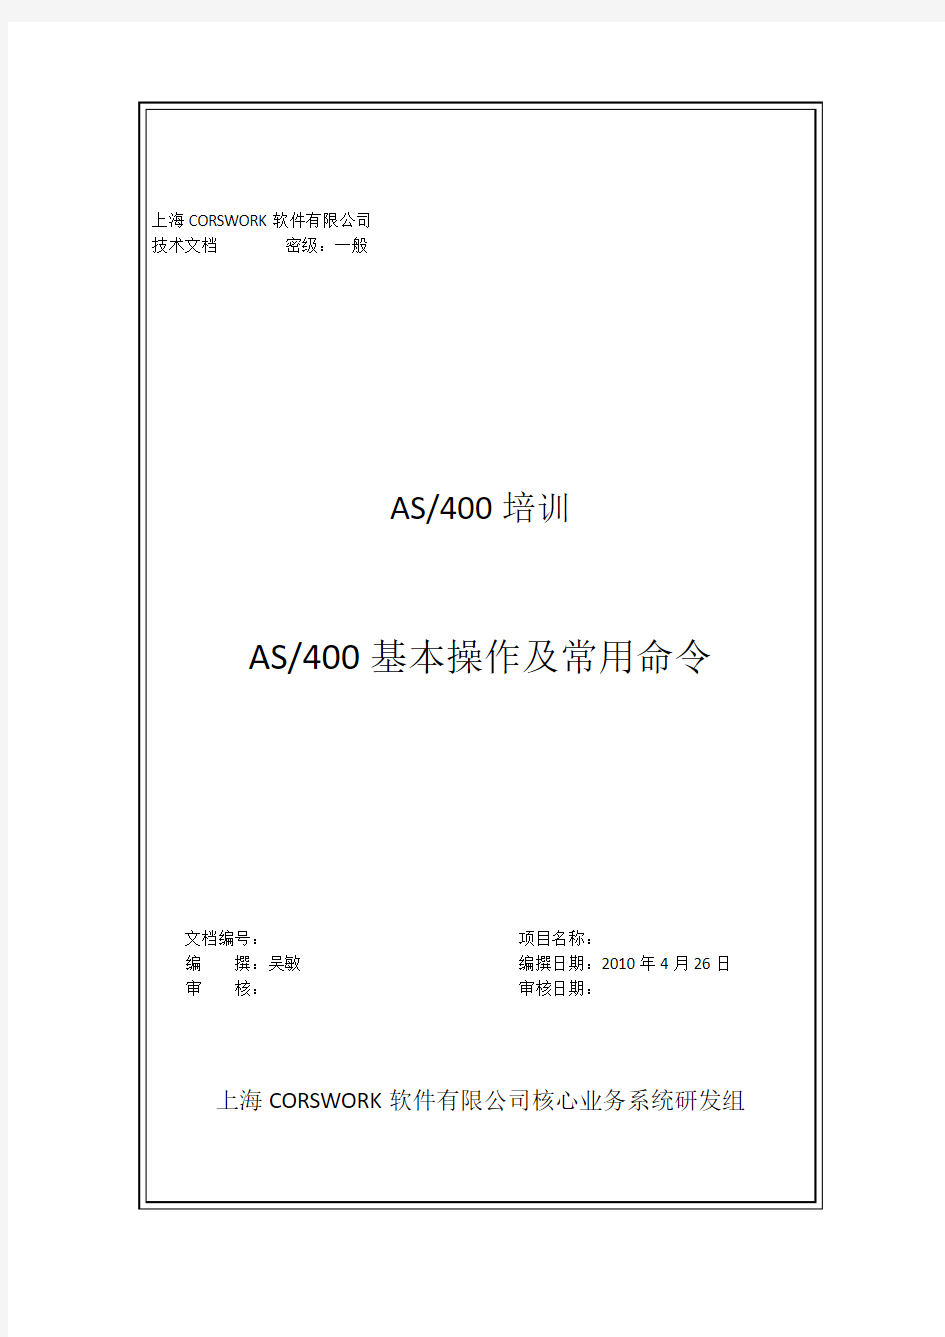 AS400基本操作及常用命令